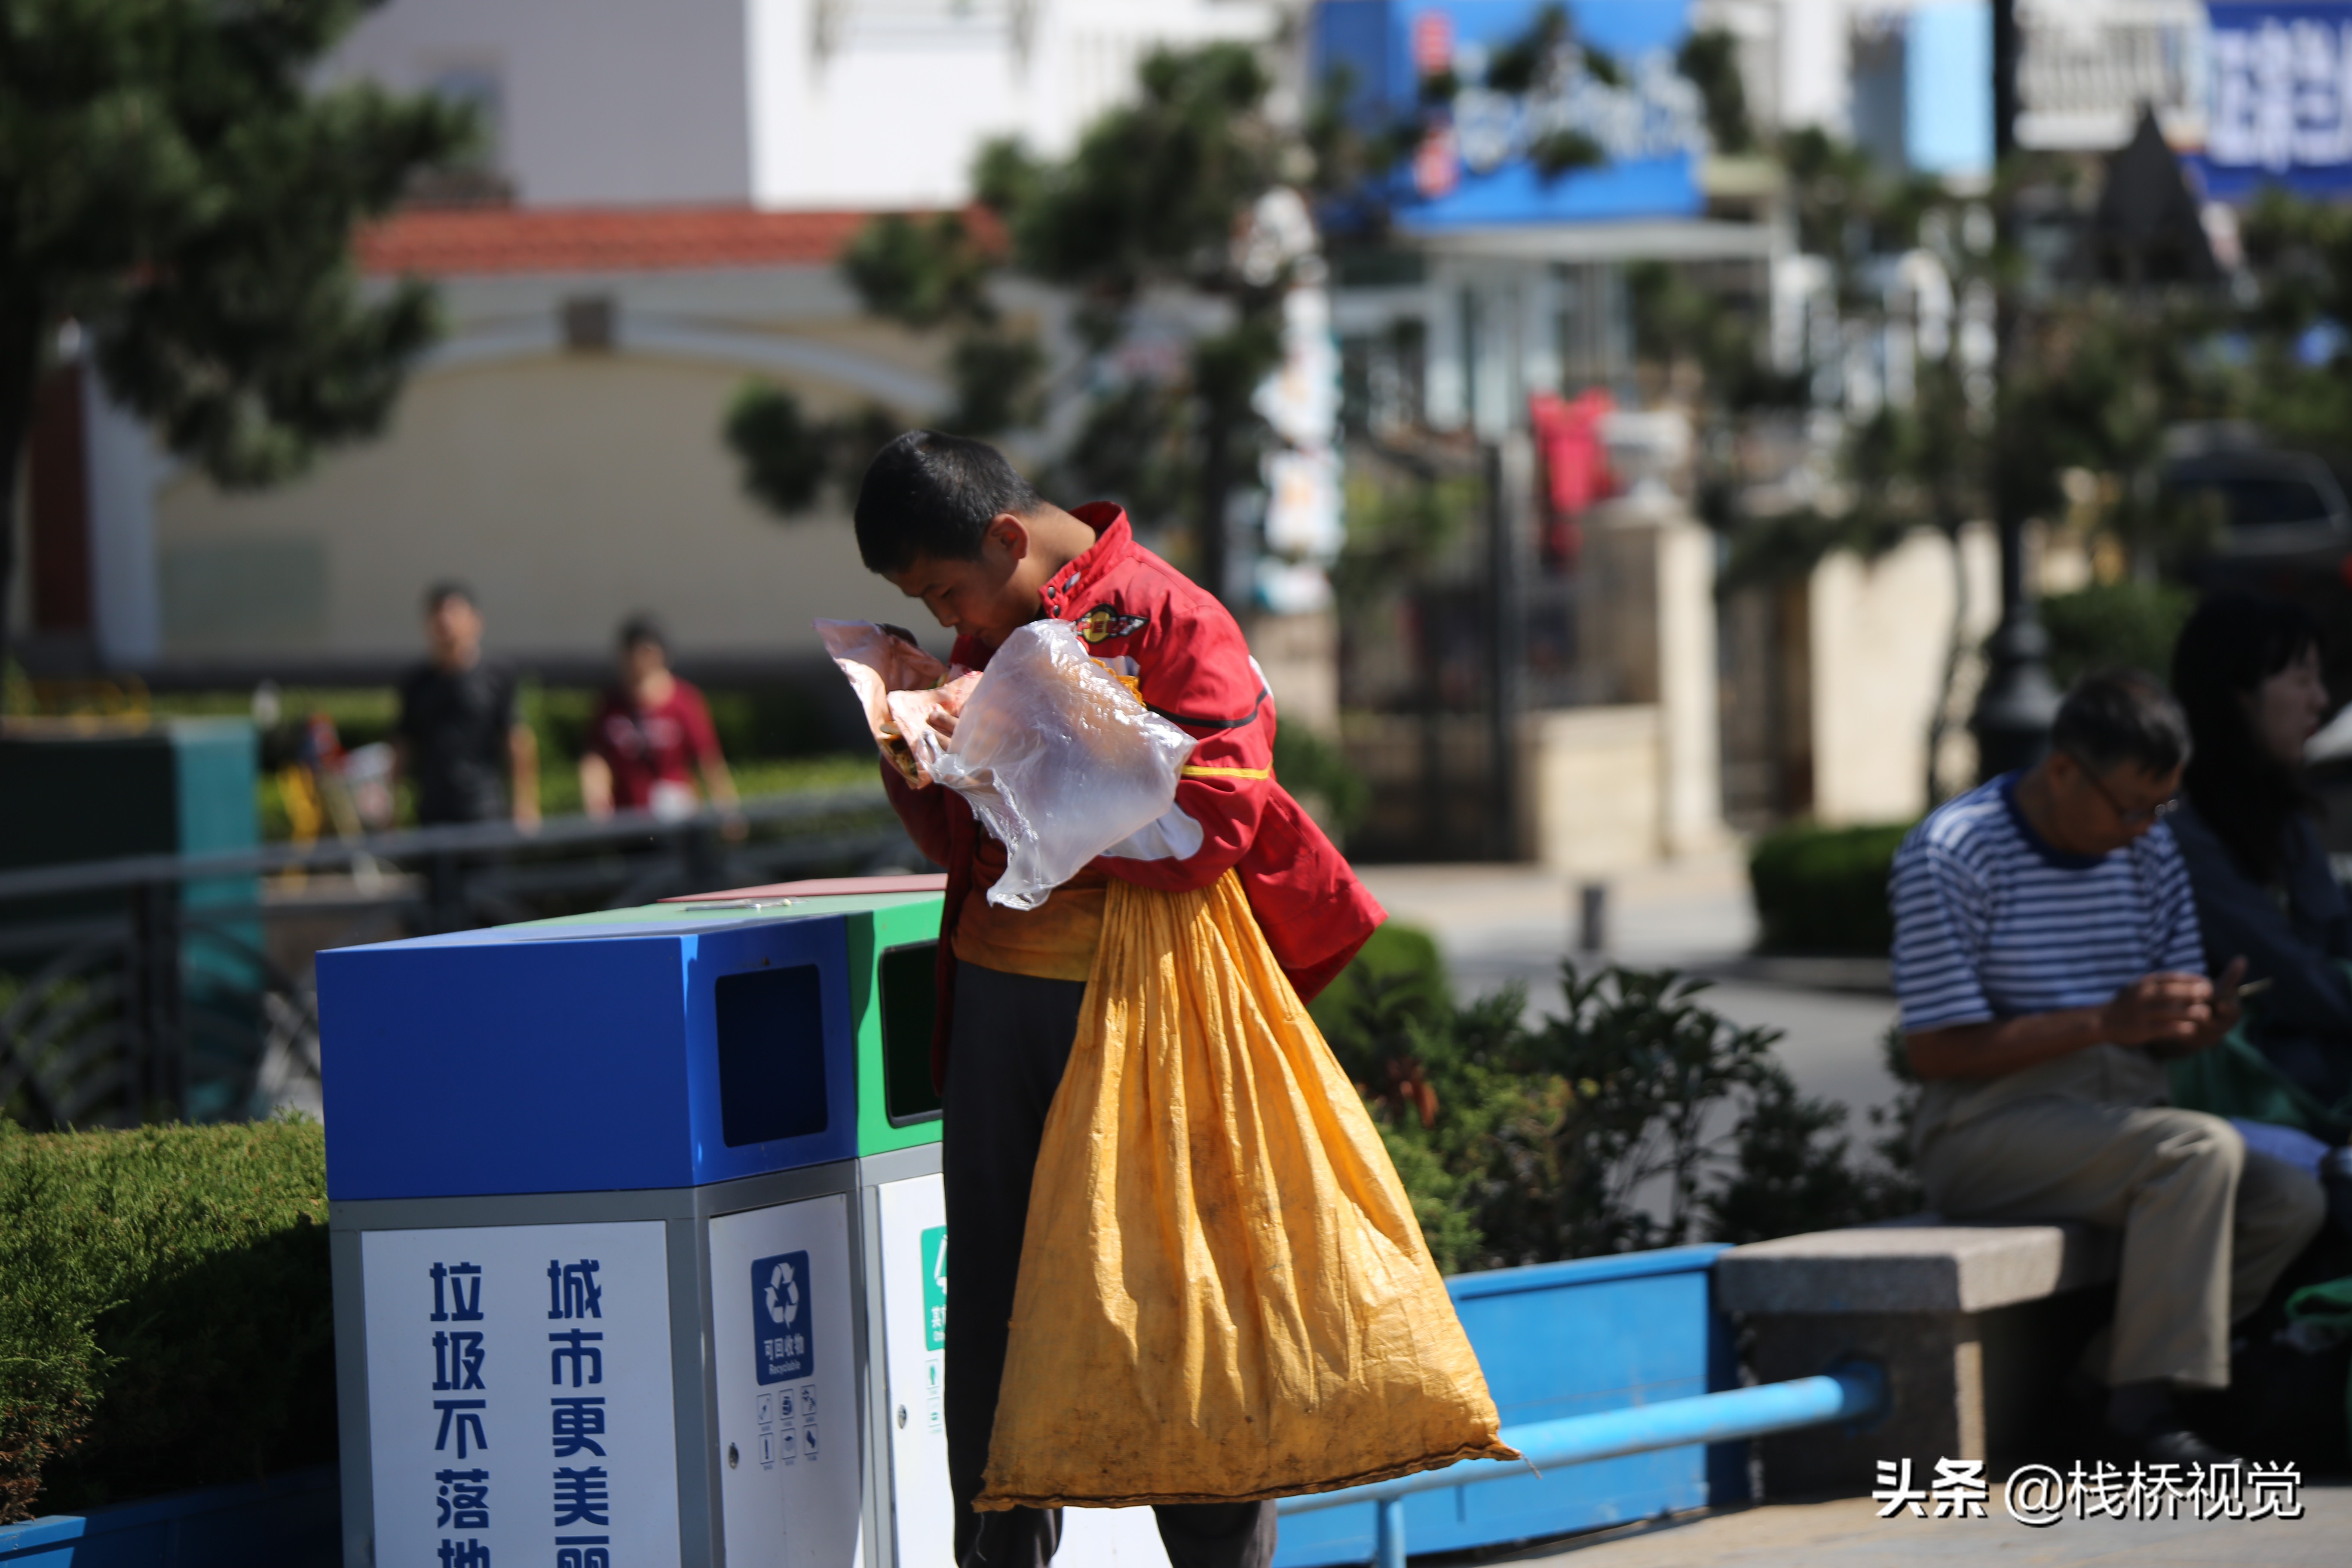 青岛栈桥景区捡垃圾的孩子翻垃圾桶喝别人剩饮料吃扔掉的食物